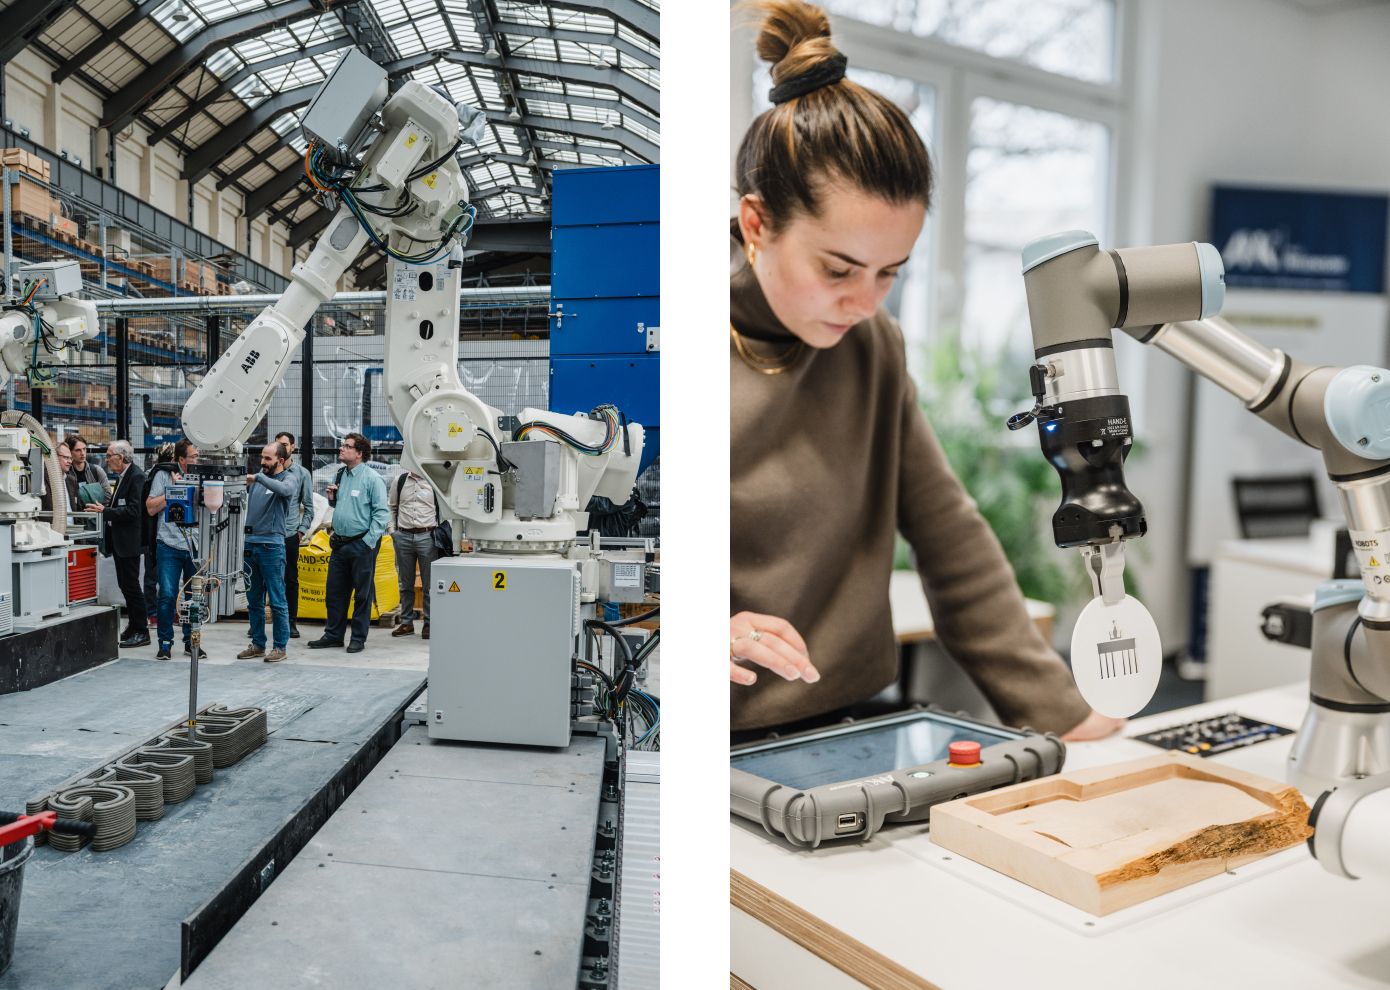 Collage aus zwei Bildern. Links ein Roboterarm in einer Halle, rechts eine Frau an einem kleine Roboterarm auf einem Tisch